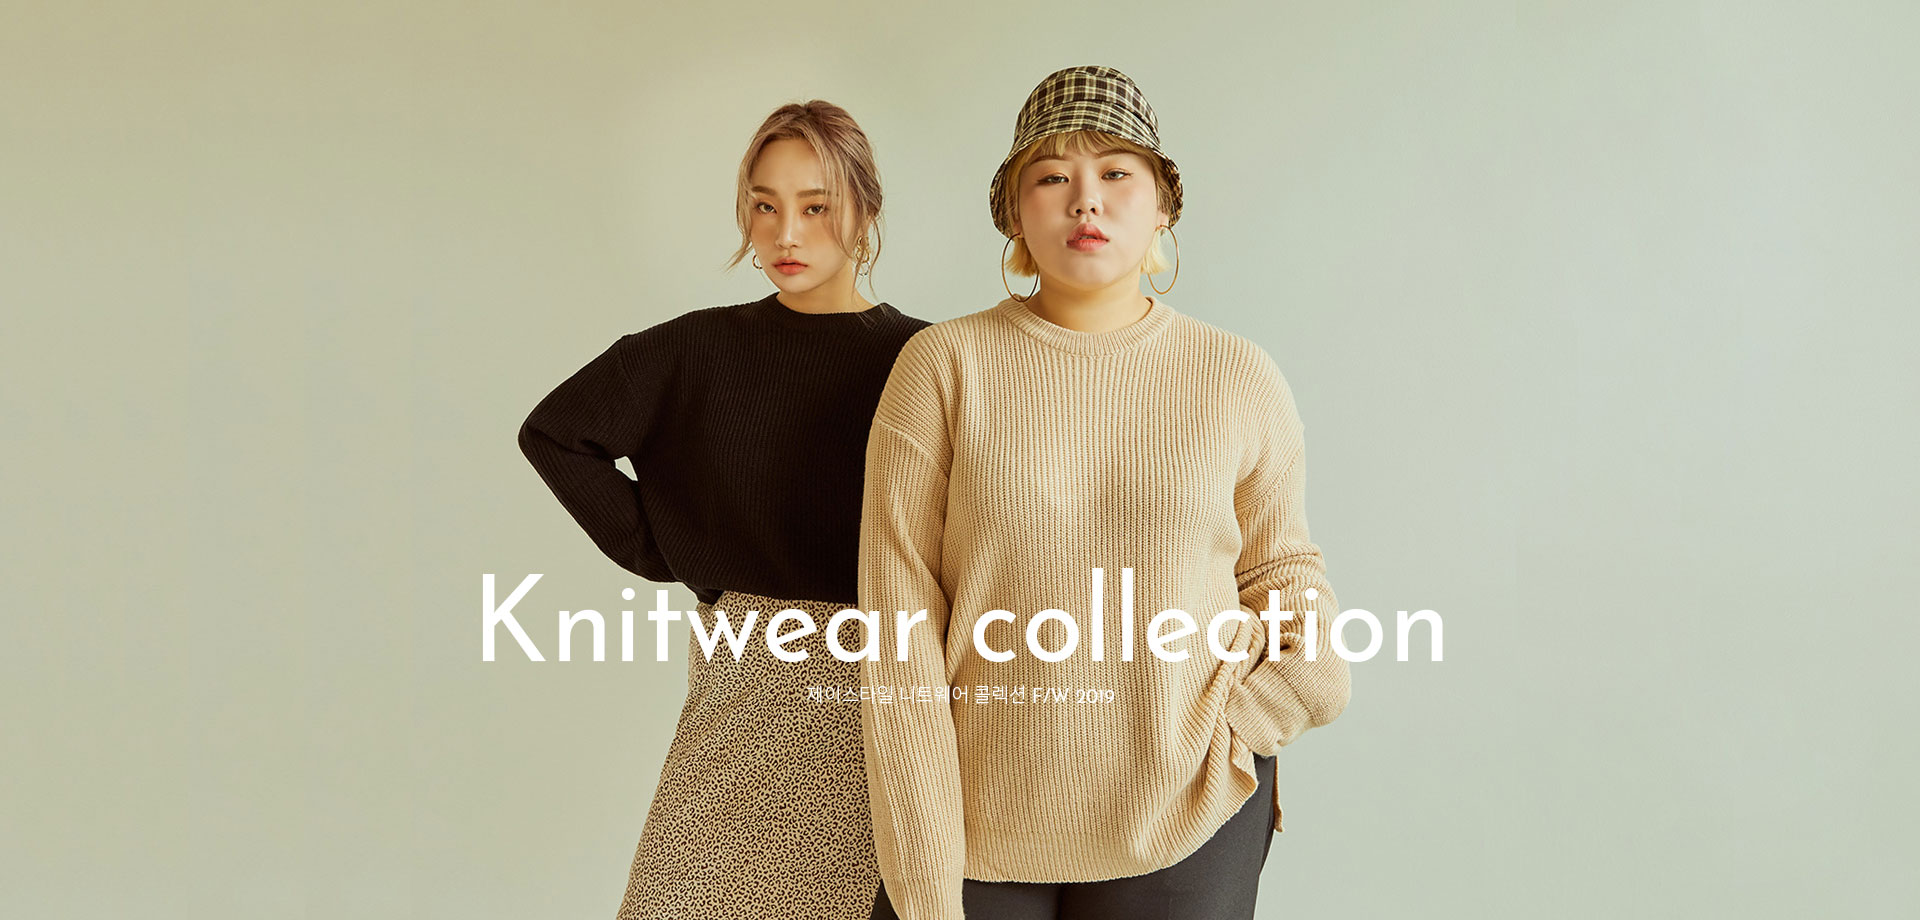 knit wear